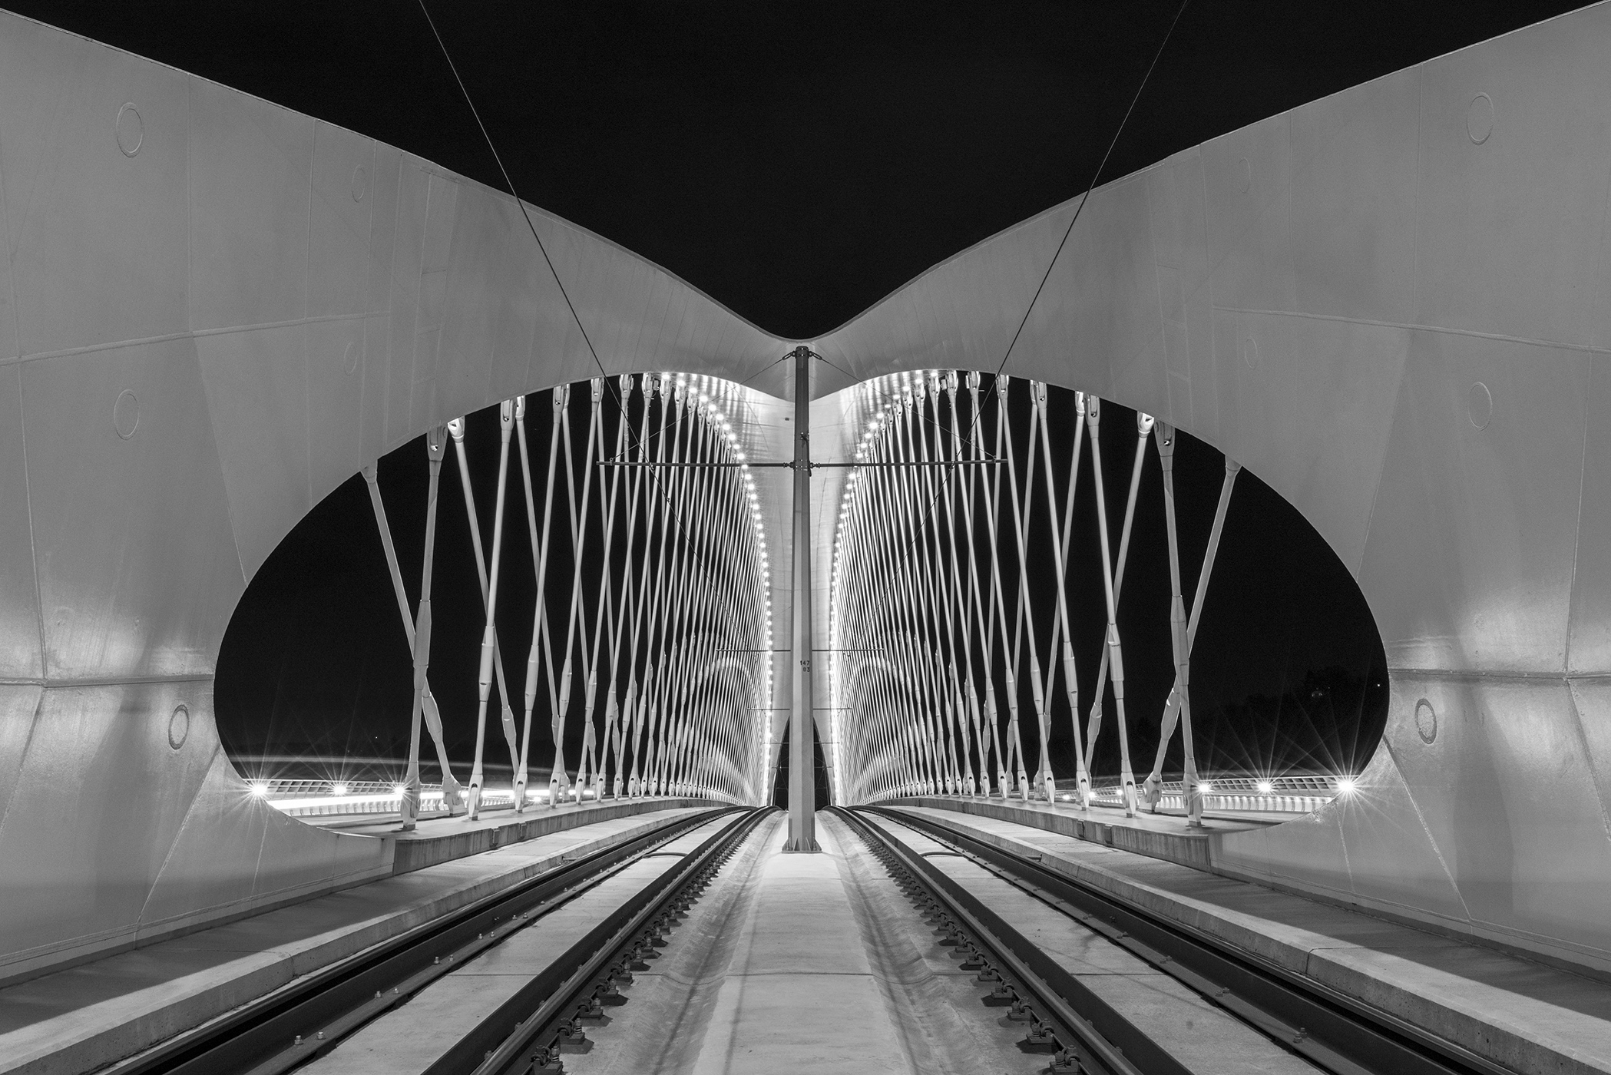 Trojský most